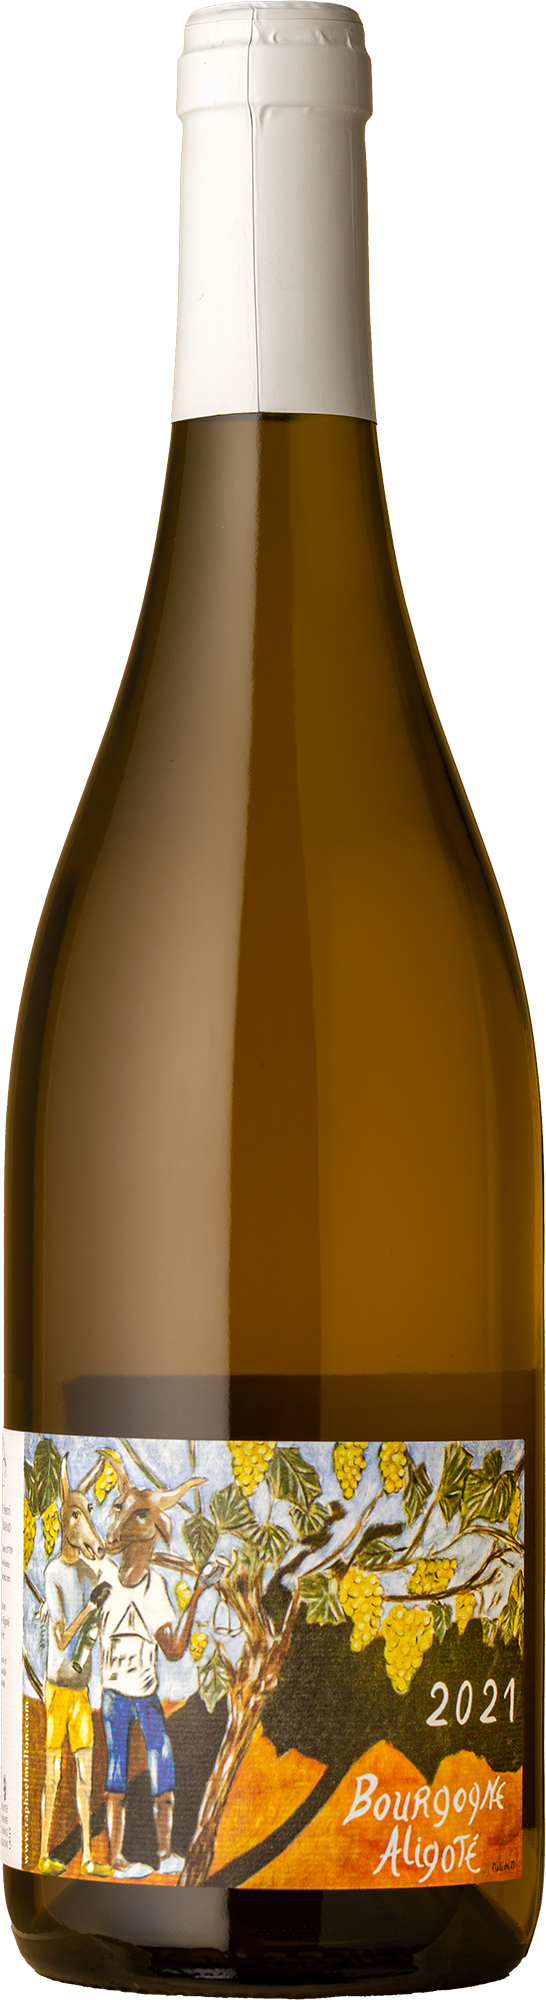 Domaine Henri Naudin Ferrand - Mallon Bourgogne Aligoté 2021 White Wine